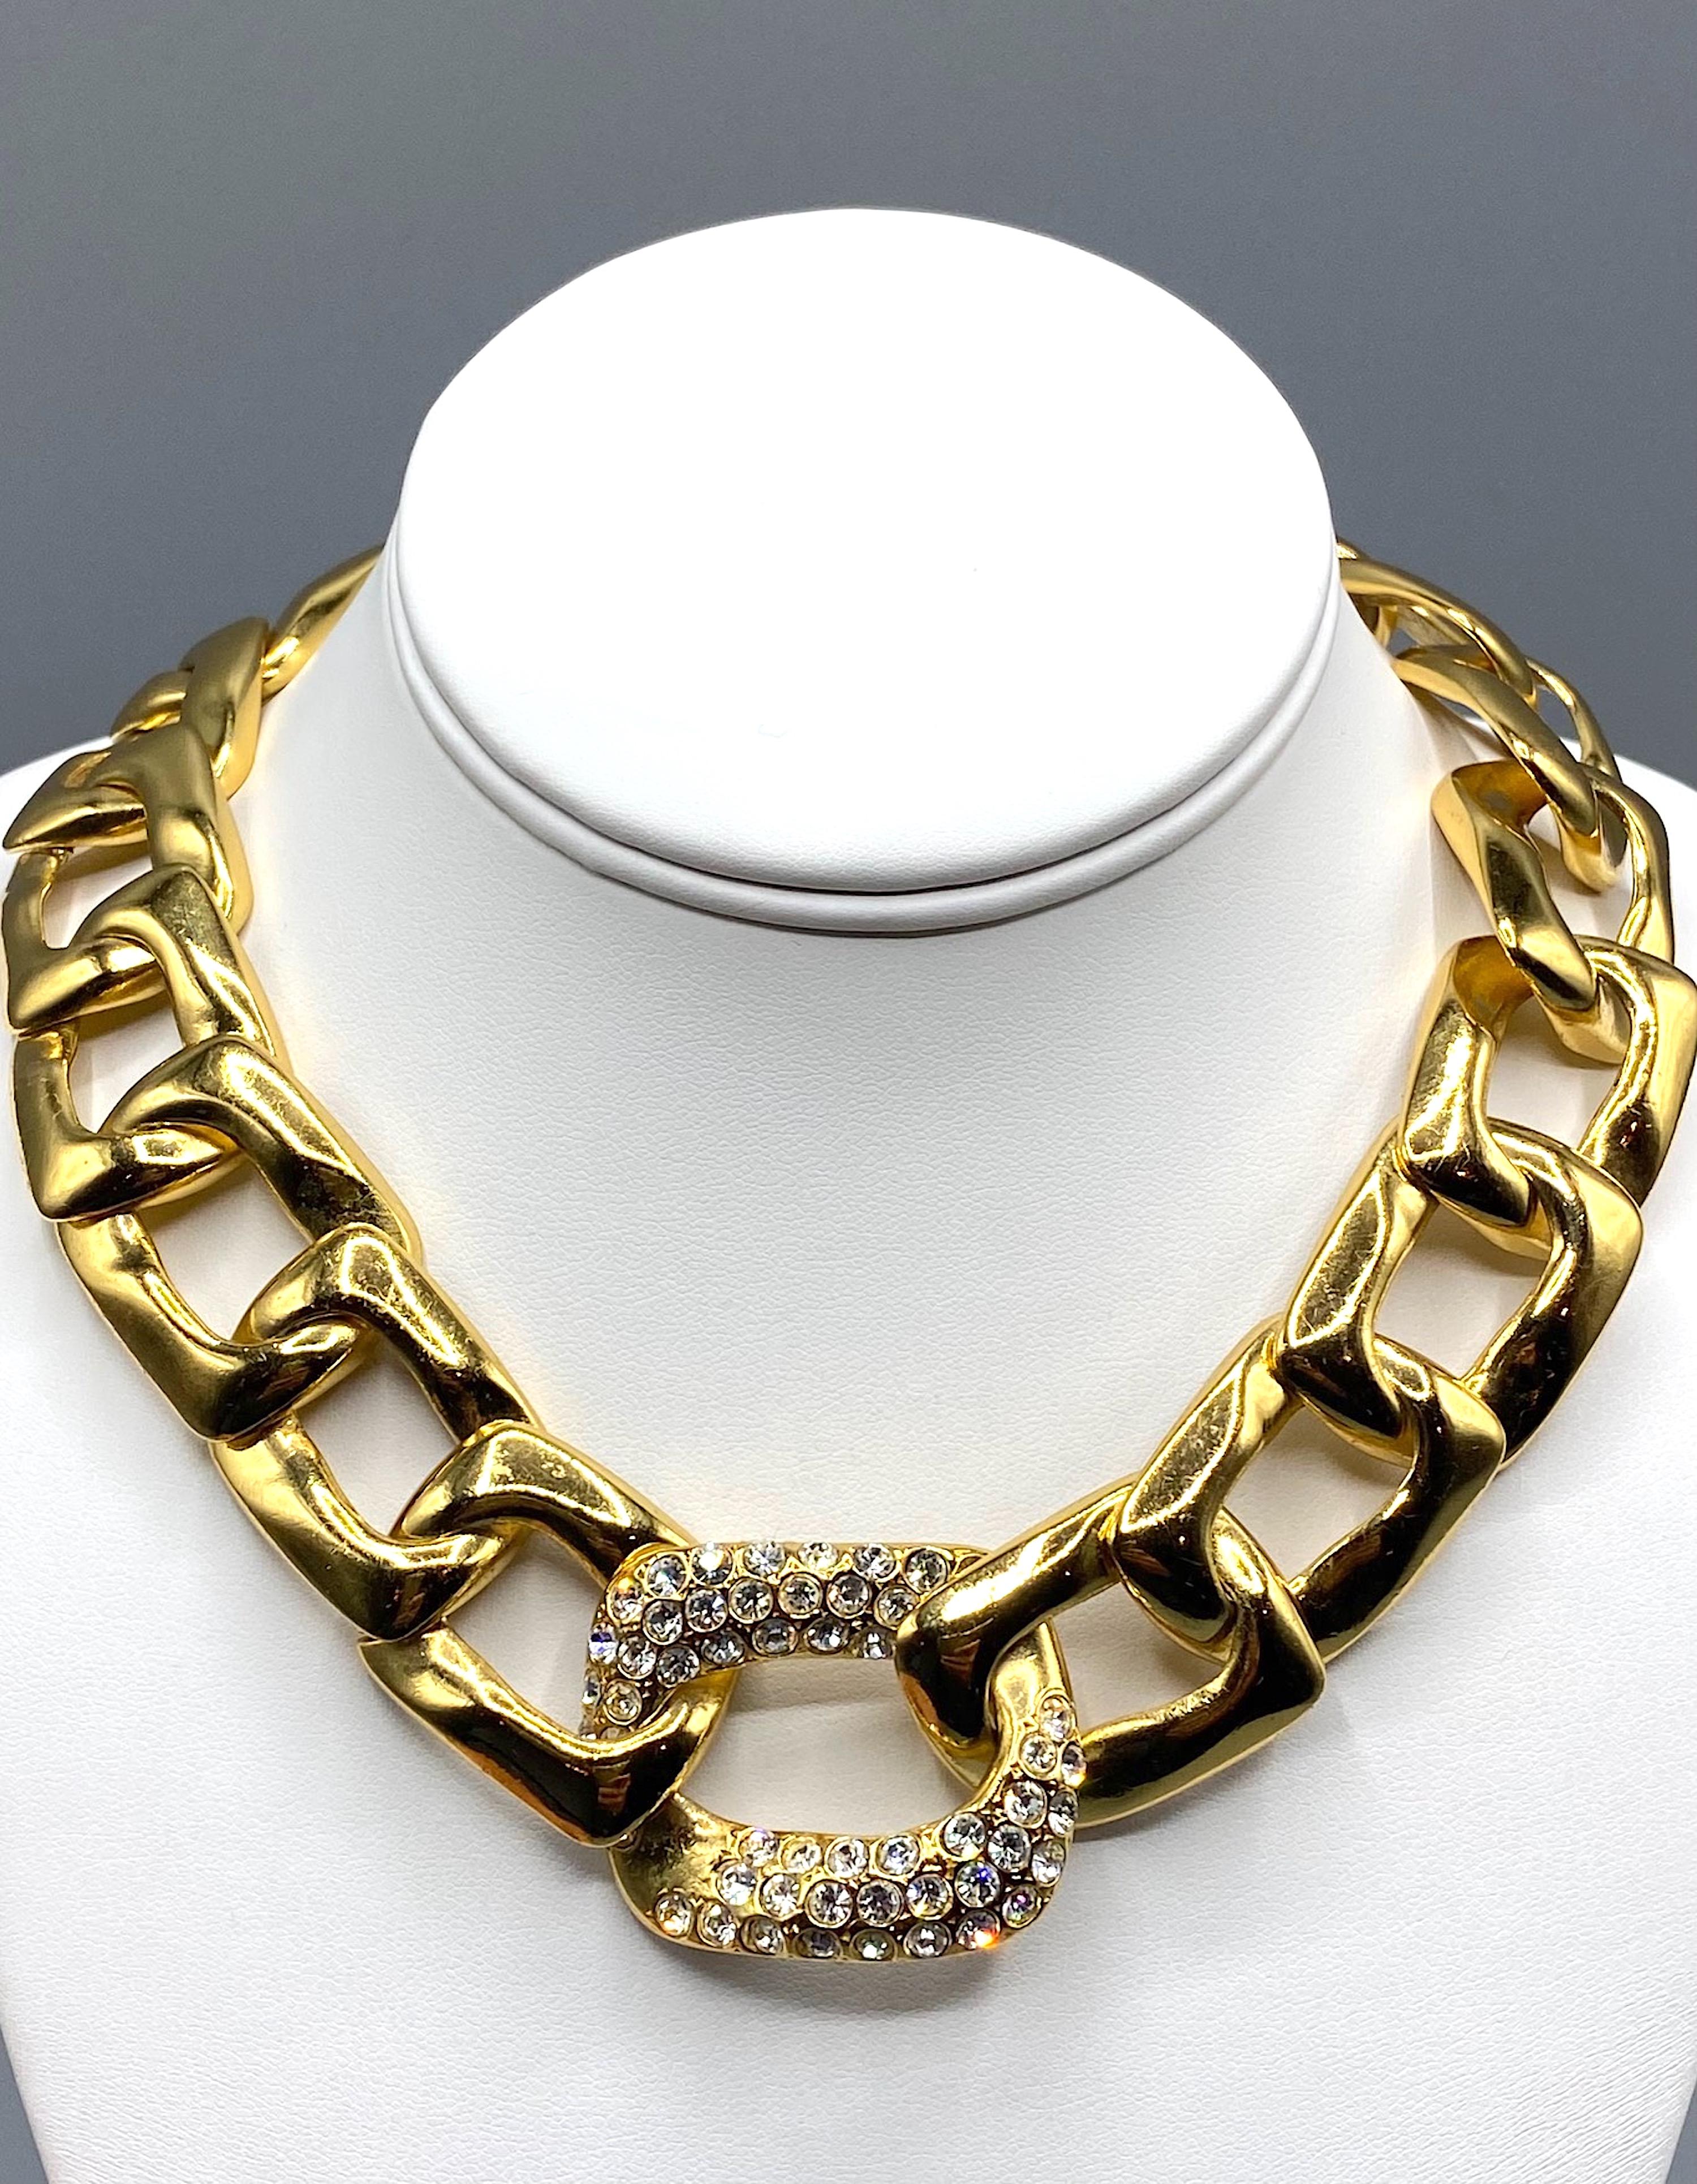 Cette plaque d'or est un classique des années 1980.  Collier Yves Saint Laurent collier à gros maillons.
Le maillon central, le plus grand, mesure 1,5 pouce de haut et est serti de strass. À partir du maillon central en strass, chaque chaîne devient